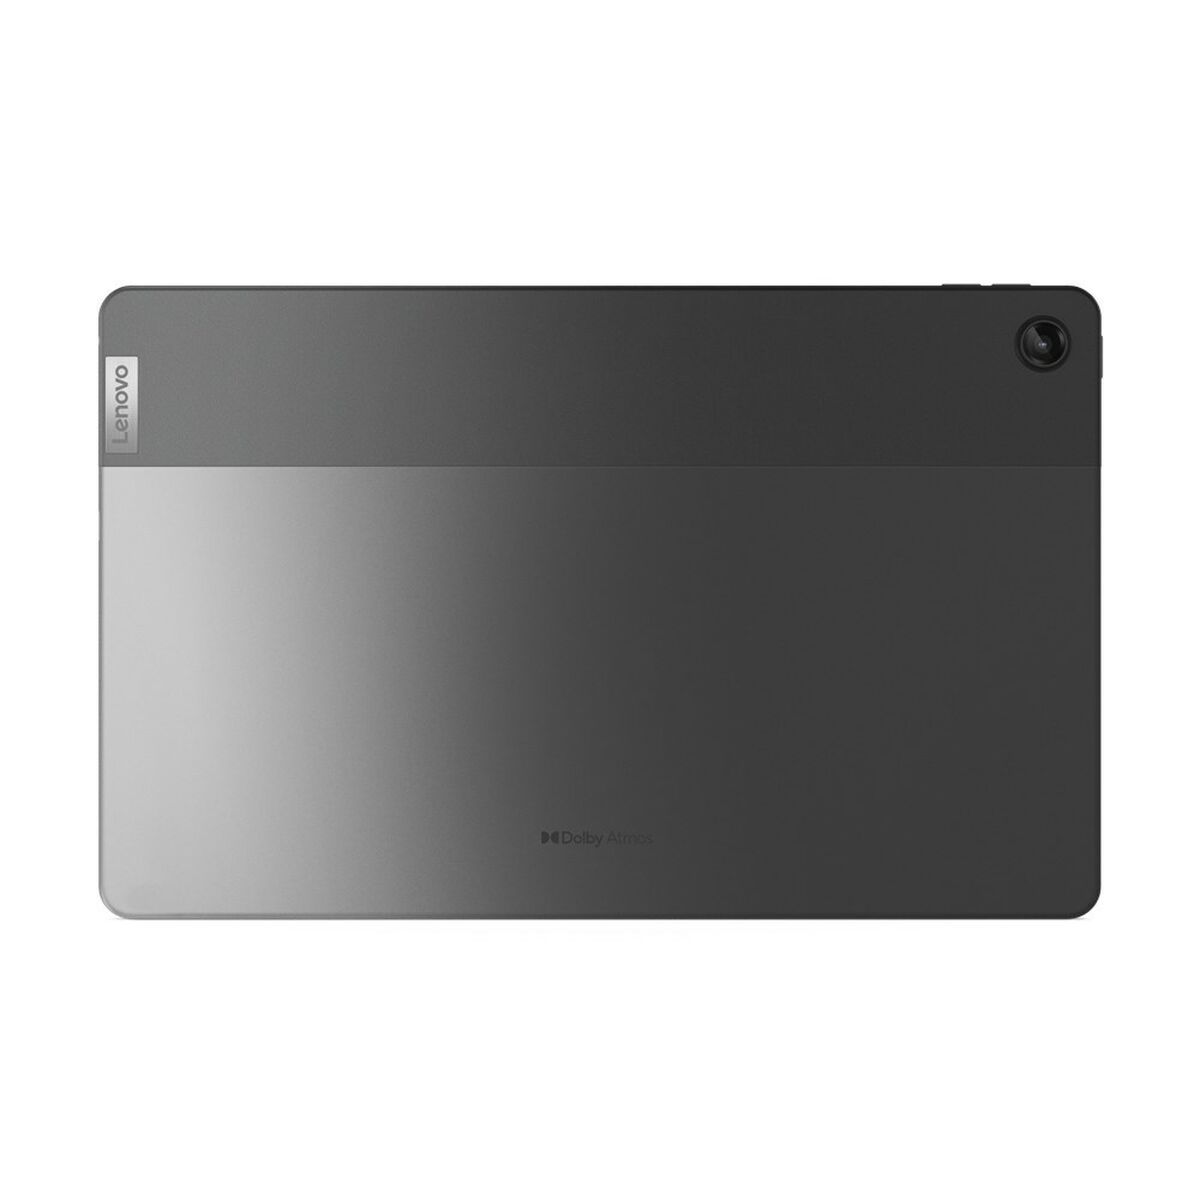 Tablet Lenovo Tab M10 Plus 4 GB RAM 10,6" Qualcomm Snapdragon 680 Gris 128 GB